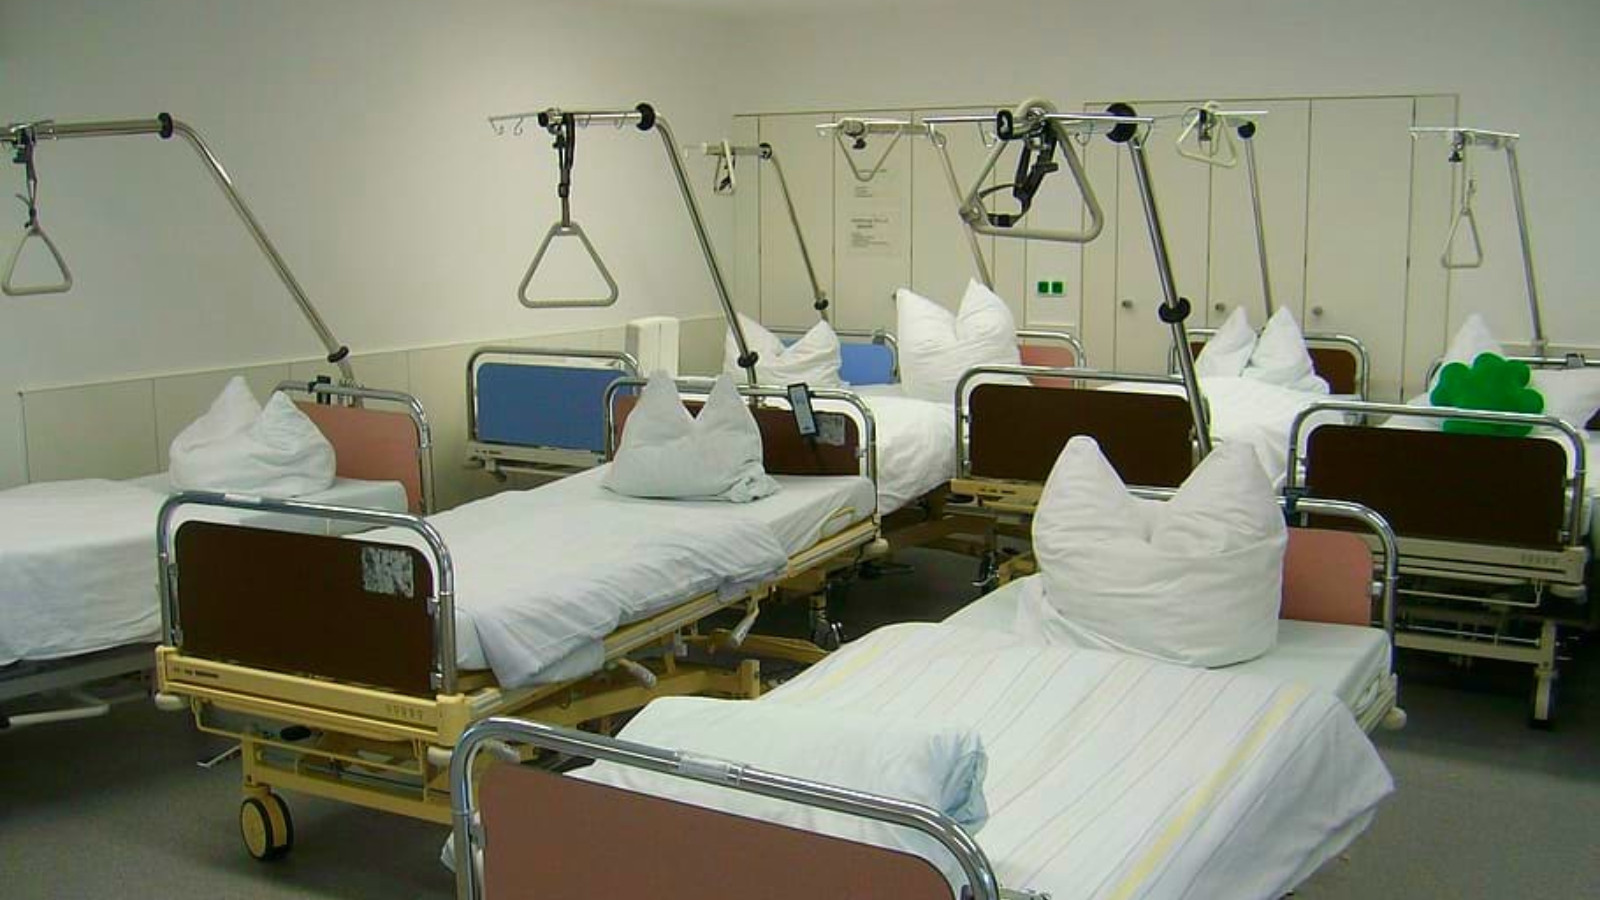 PIRATEN kritisieren Krankenhausplan des Gesundheitsministers